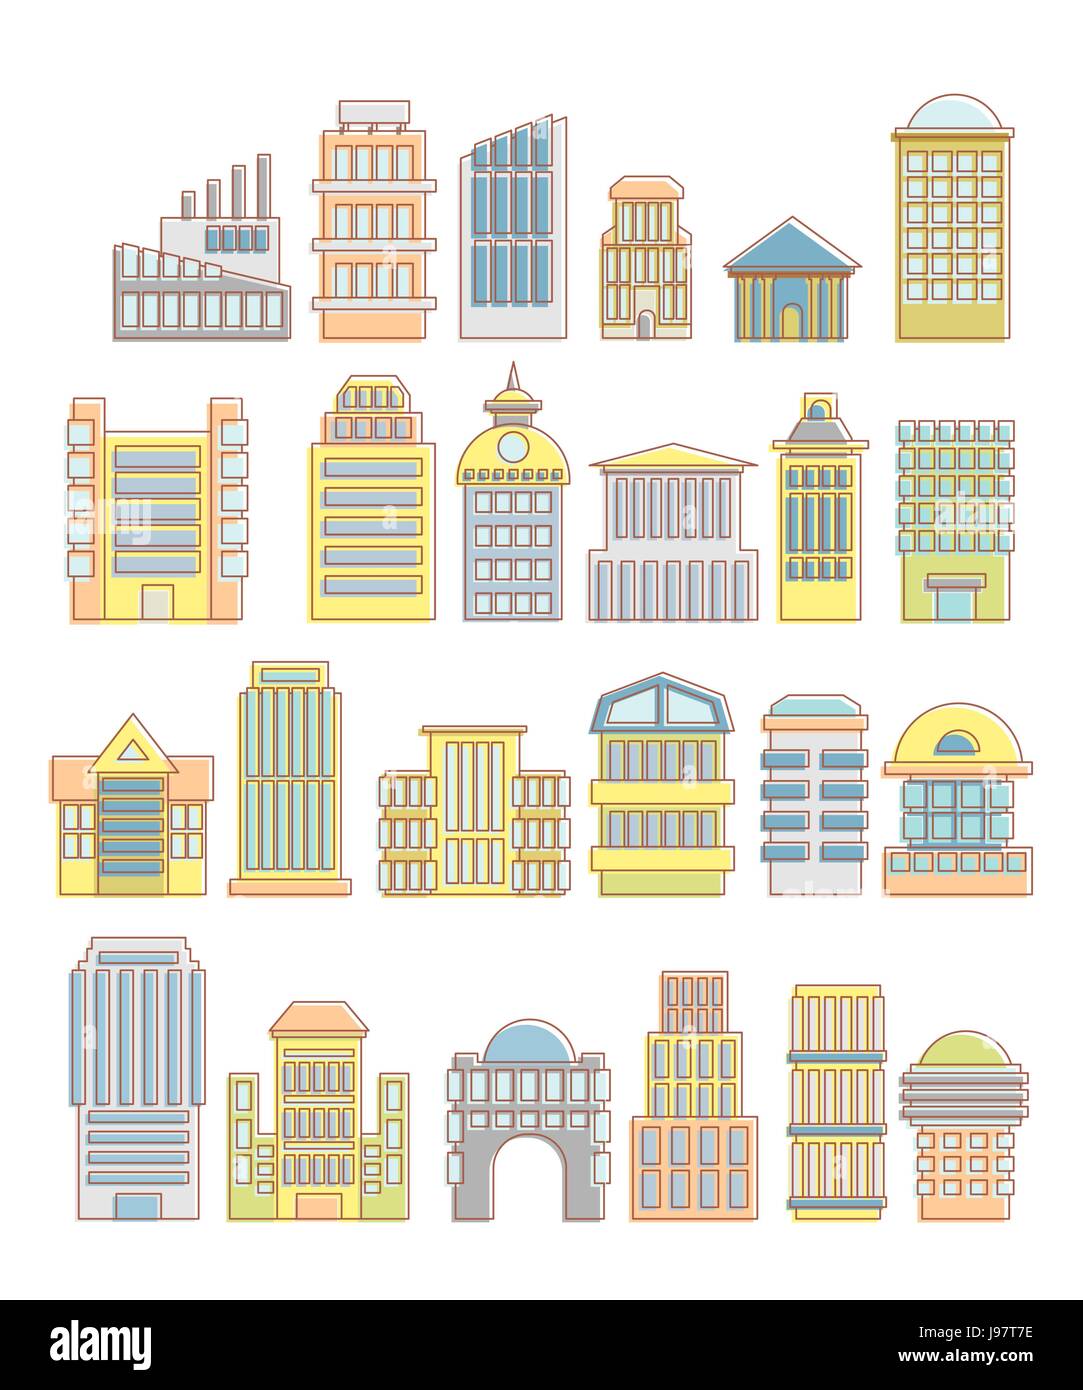 Colección de edificios, casas y objetos arquitectónicos. Los elementos urbanos en estilo de dibujos animados. Iconos de edificios públicos e instalaciones. Rascacielos y Ilustración del Vector